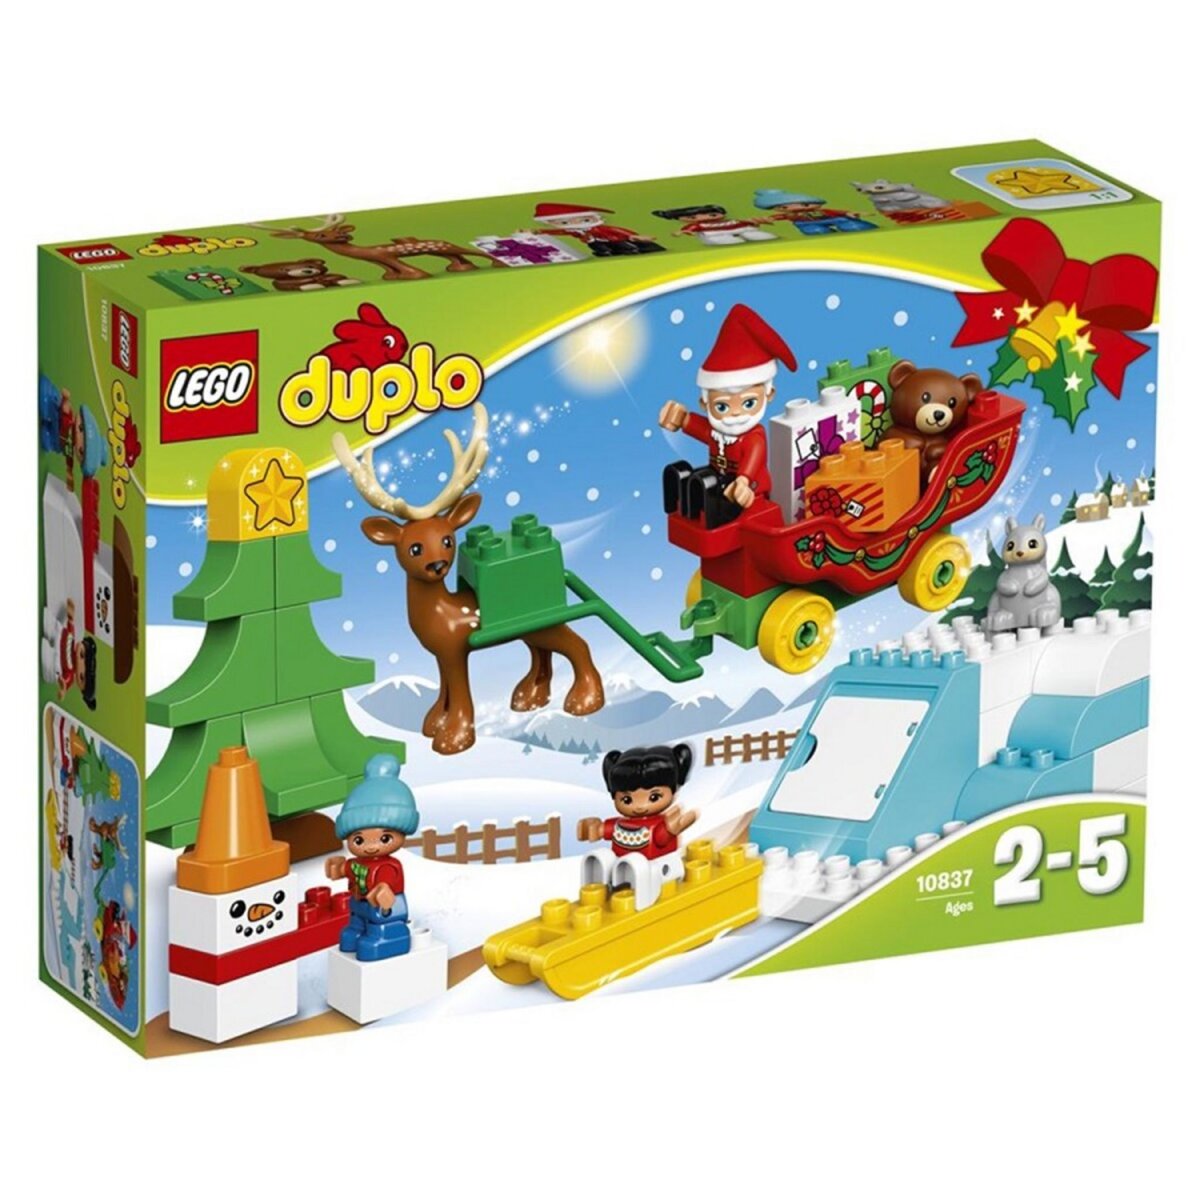 LEGO 10837 Duplo - Les vacances d'hiver du Père Noël